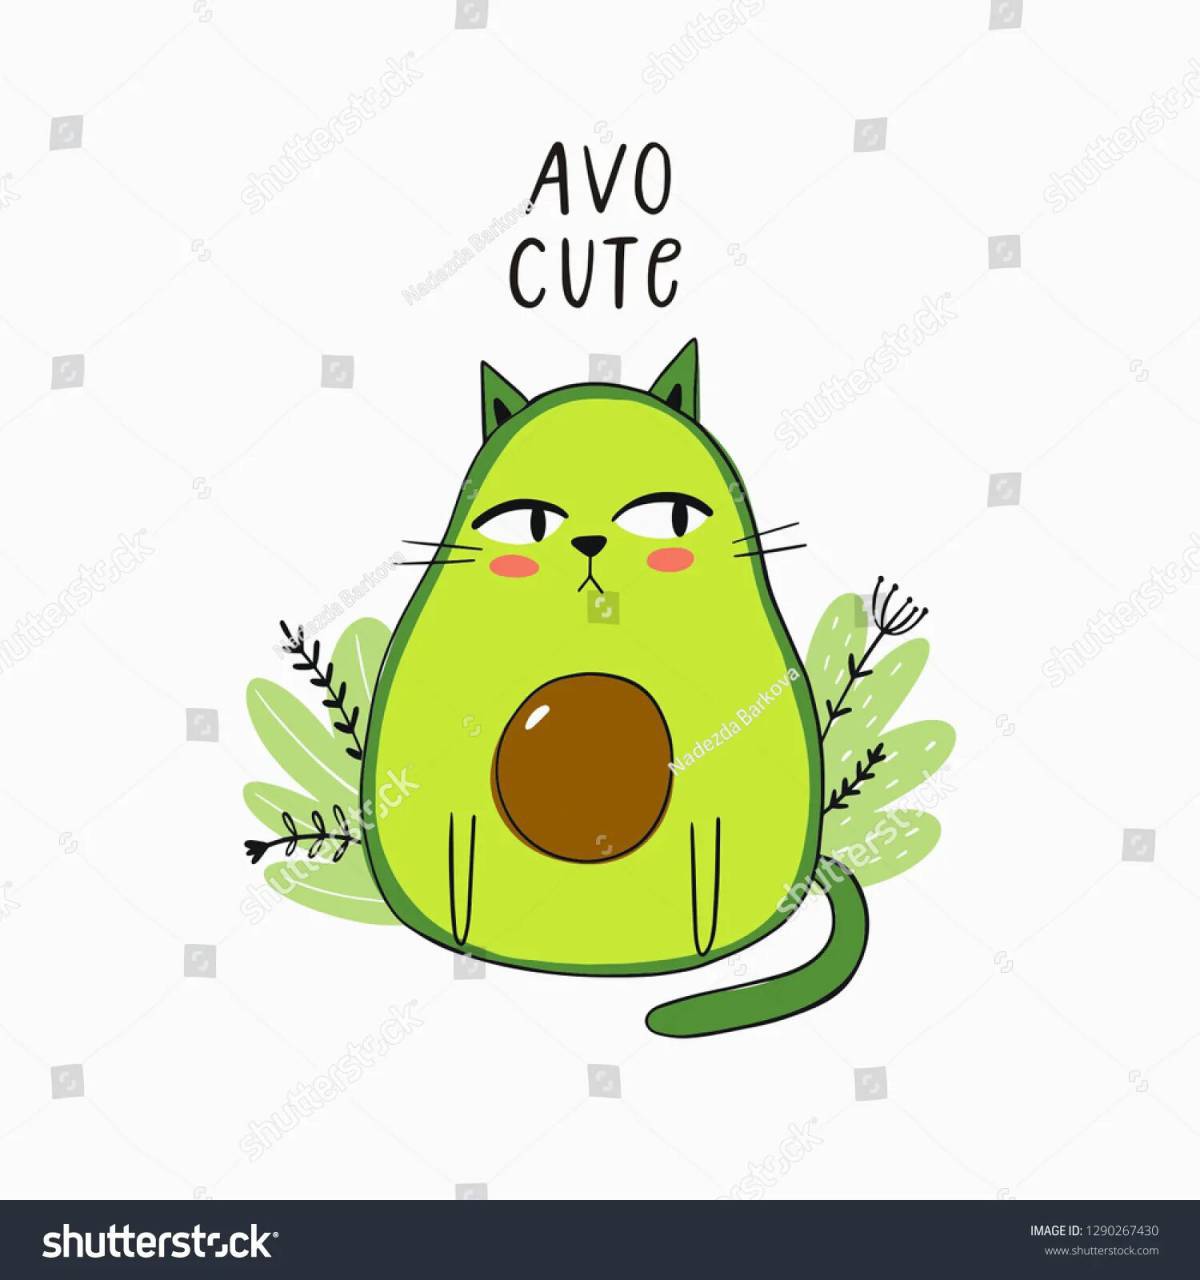 Котик авокадо #2